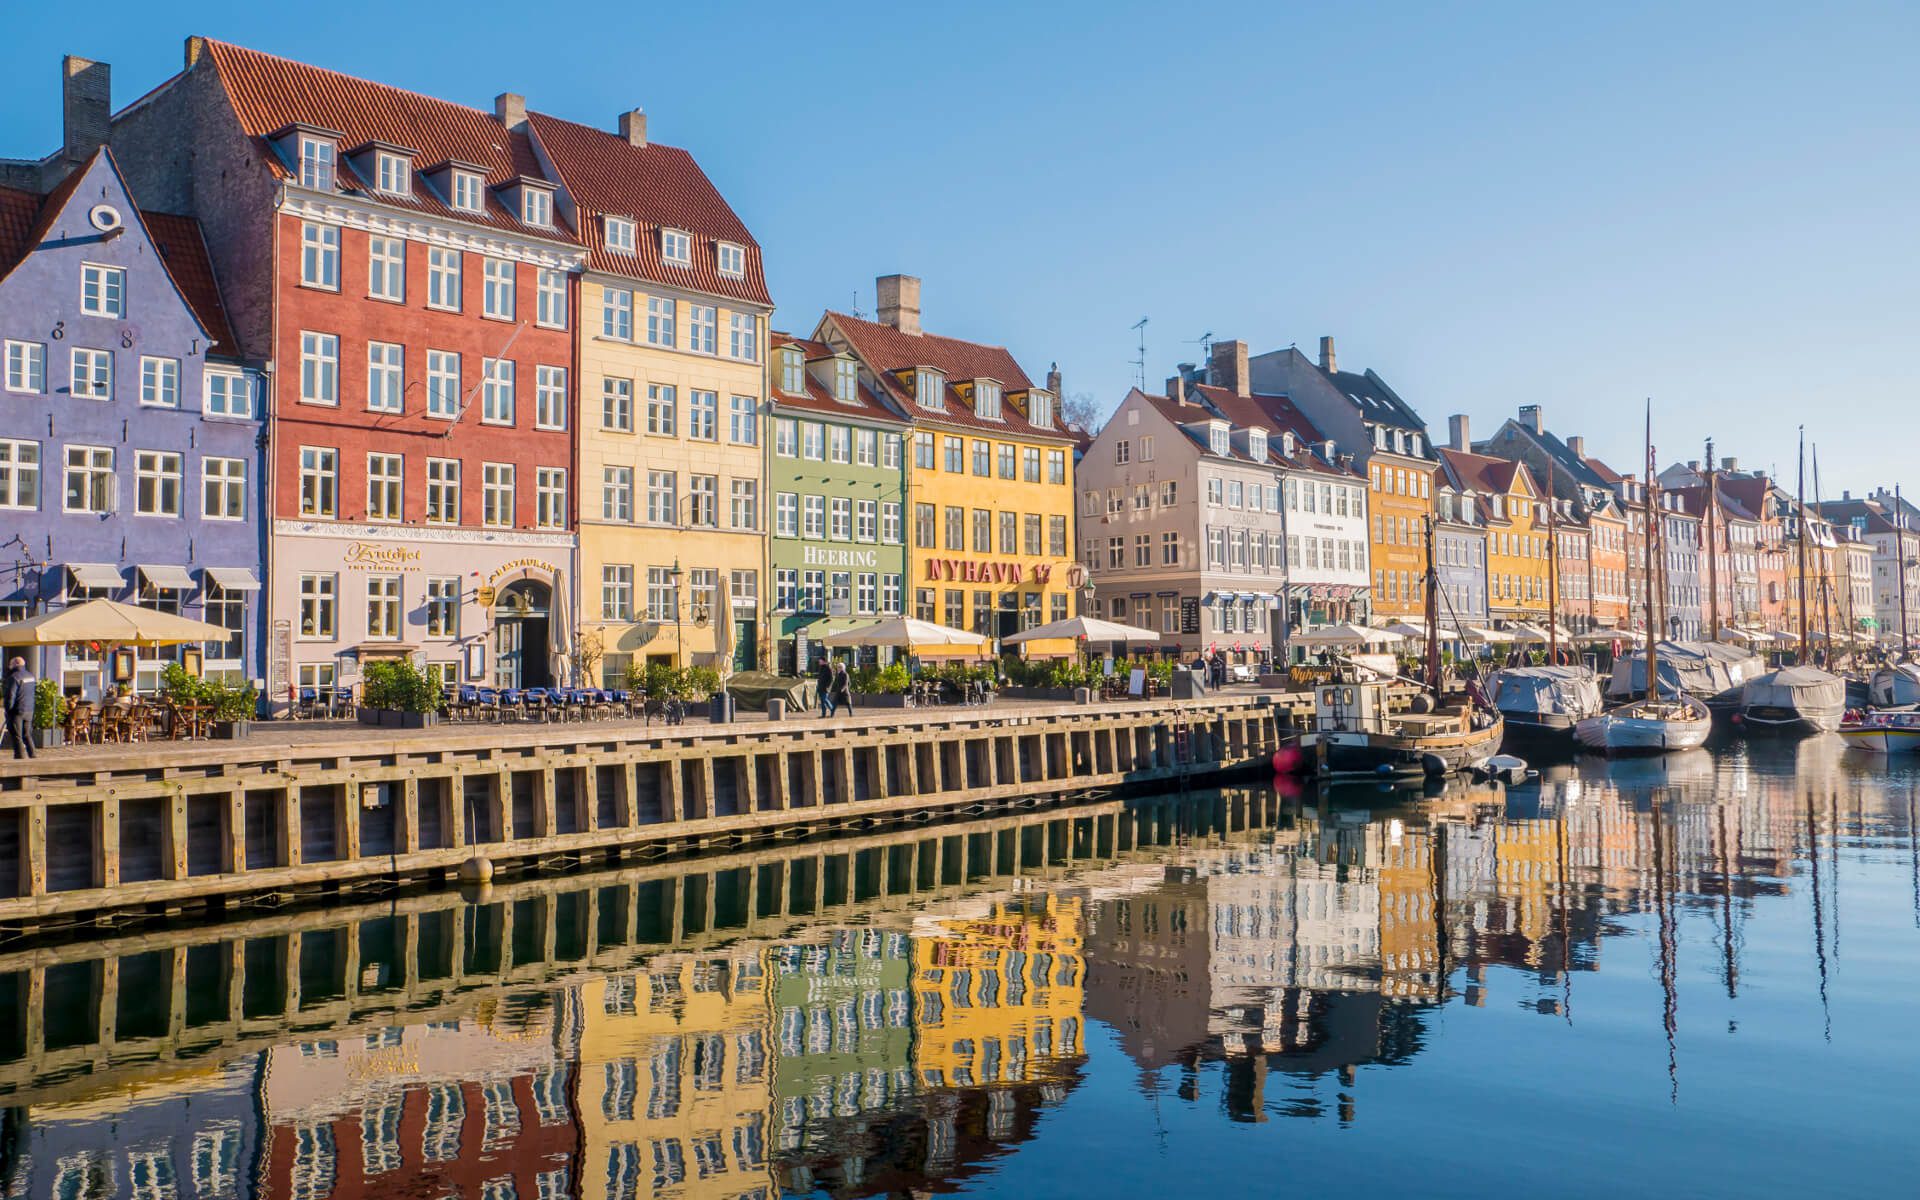 Zwiedzanie Kopenhagi w weekend. Jak tanio zwiedzić miasto?